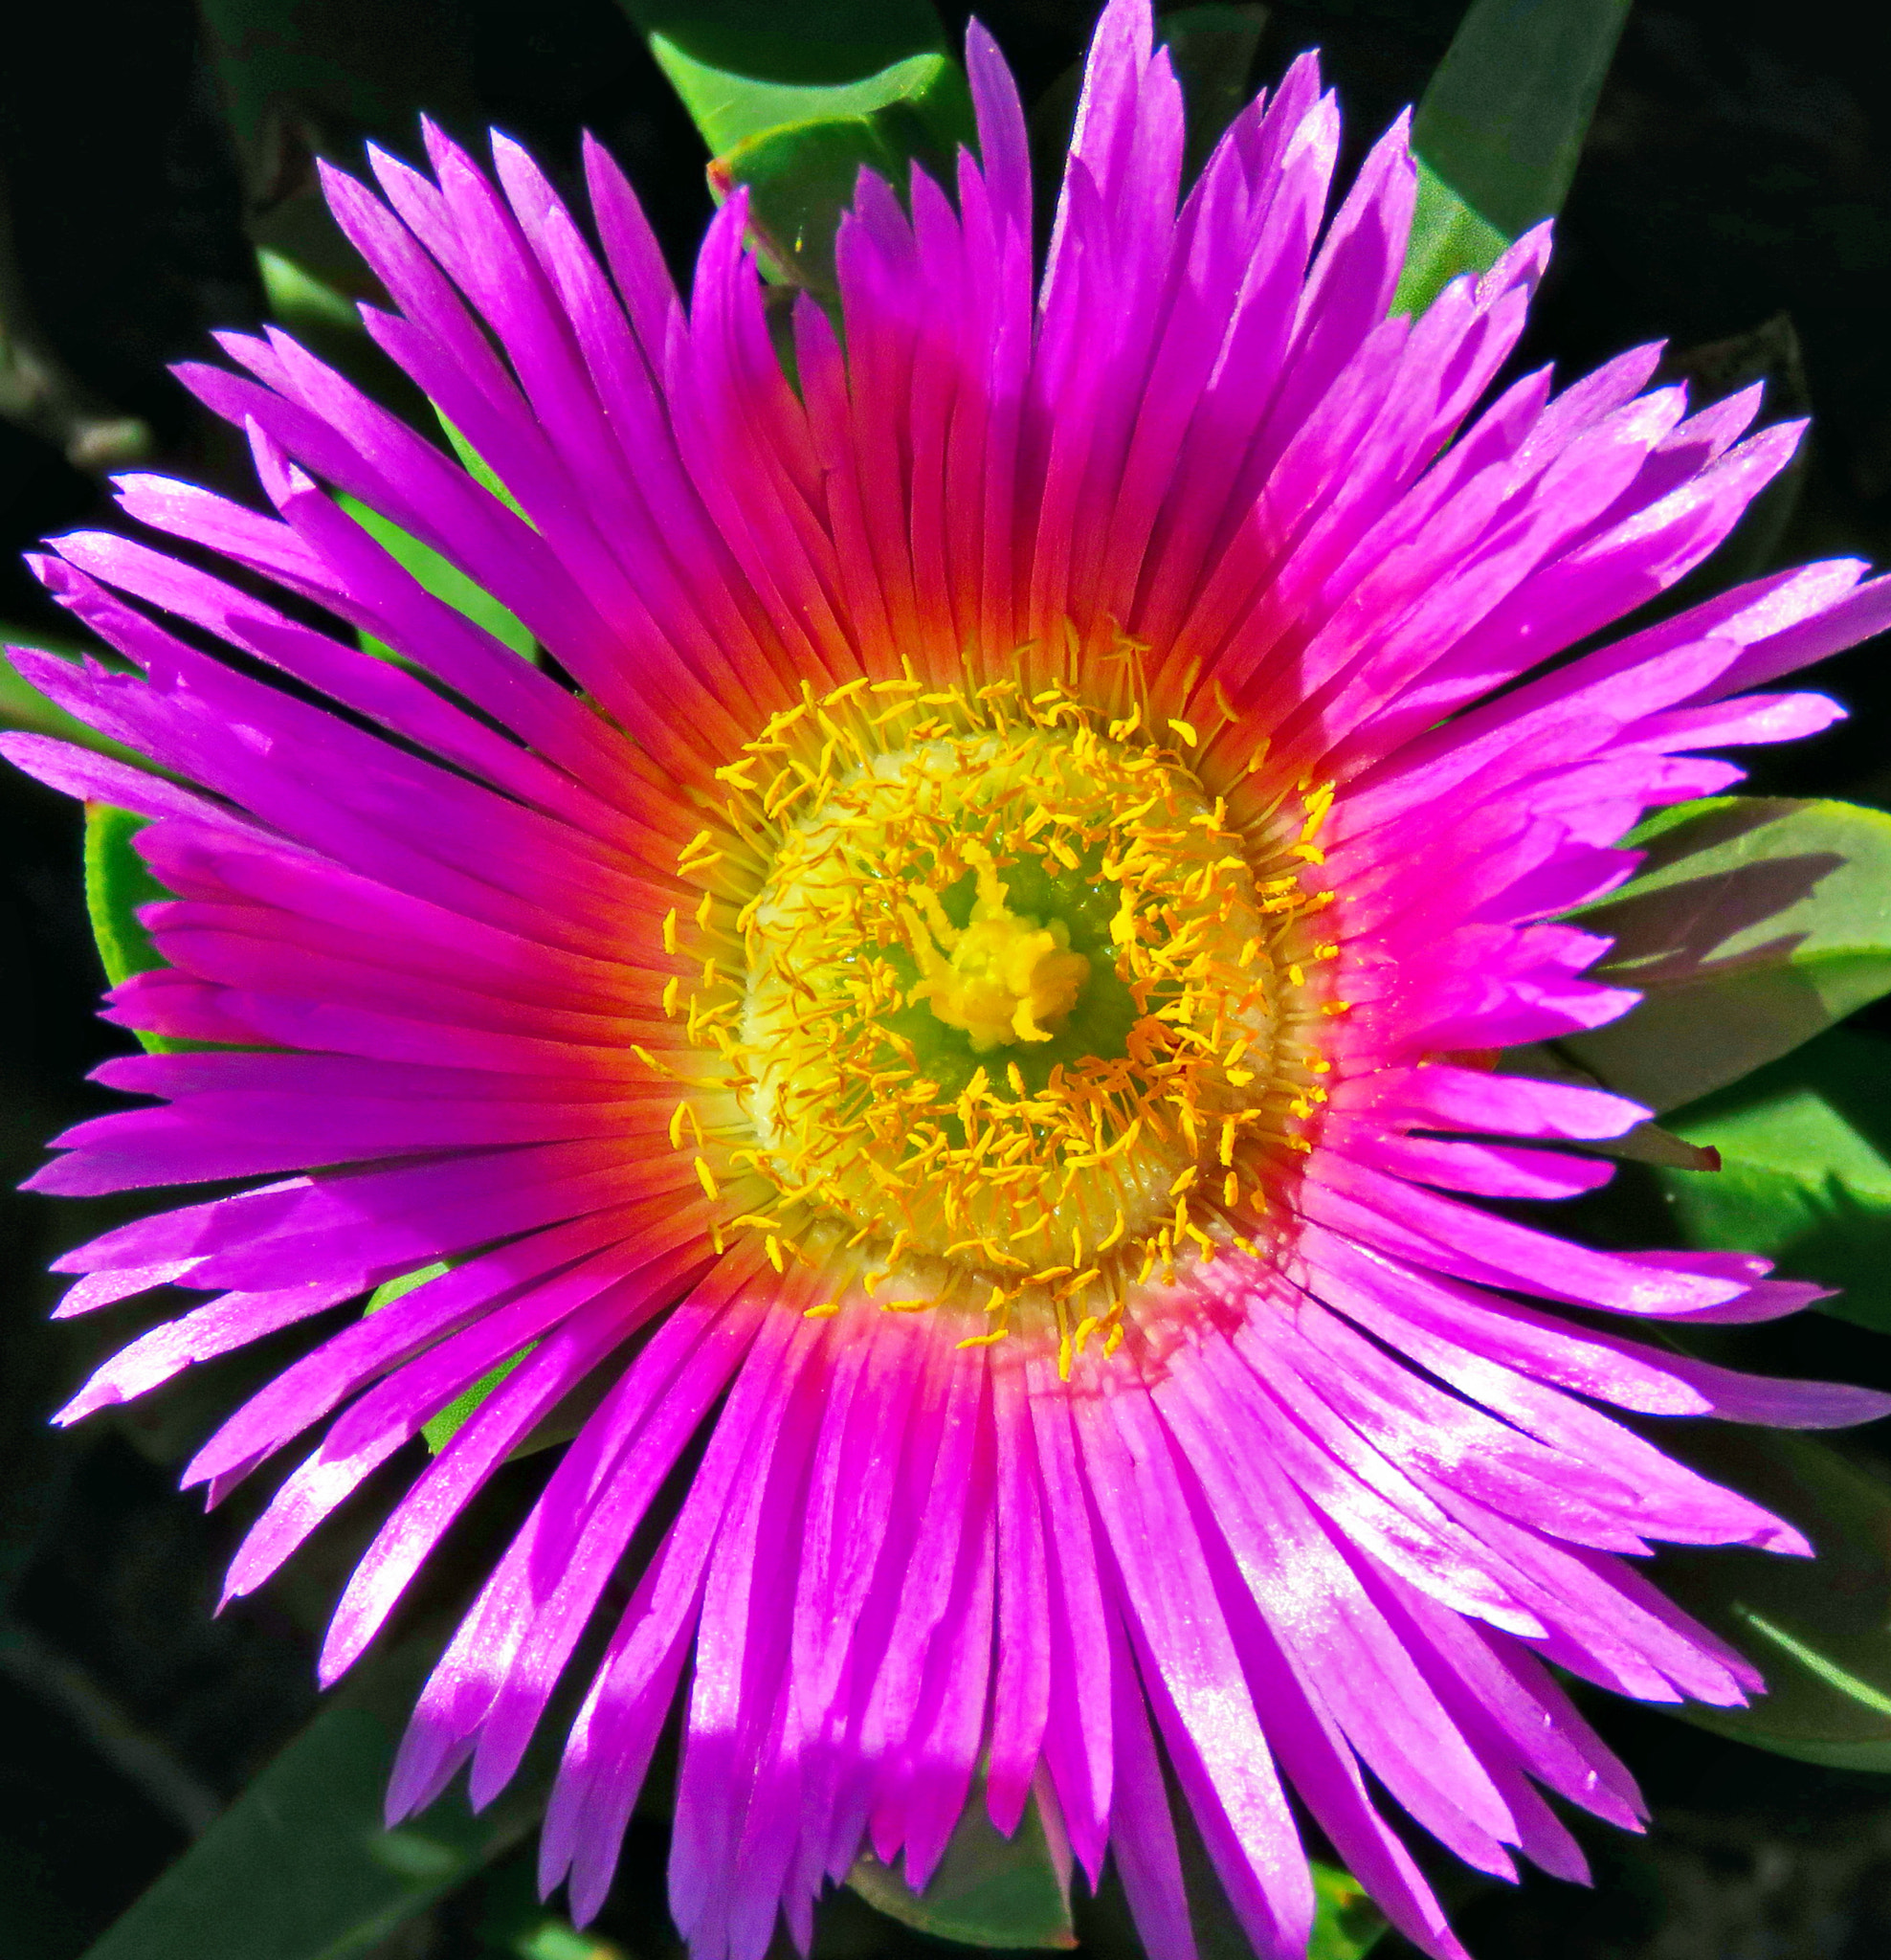 Canon PowerShot SX60 HS sample photo. Purple dandelion flower photography